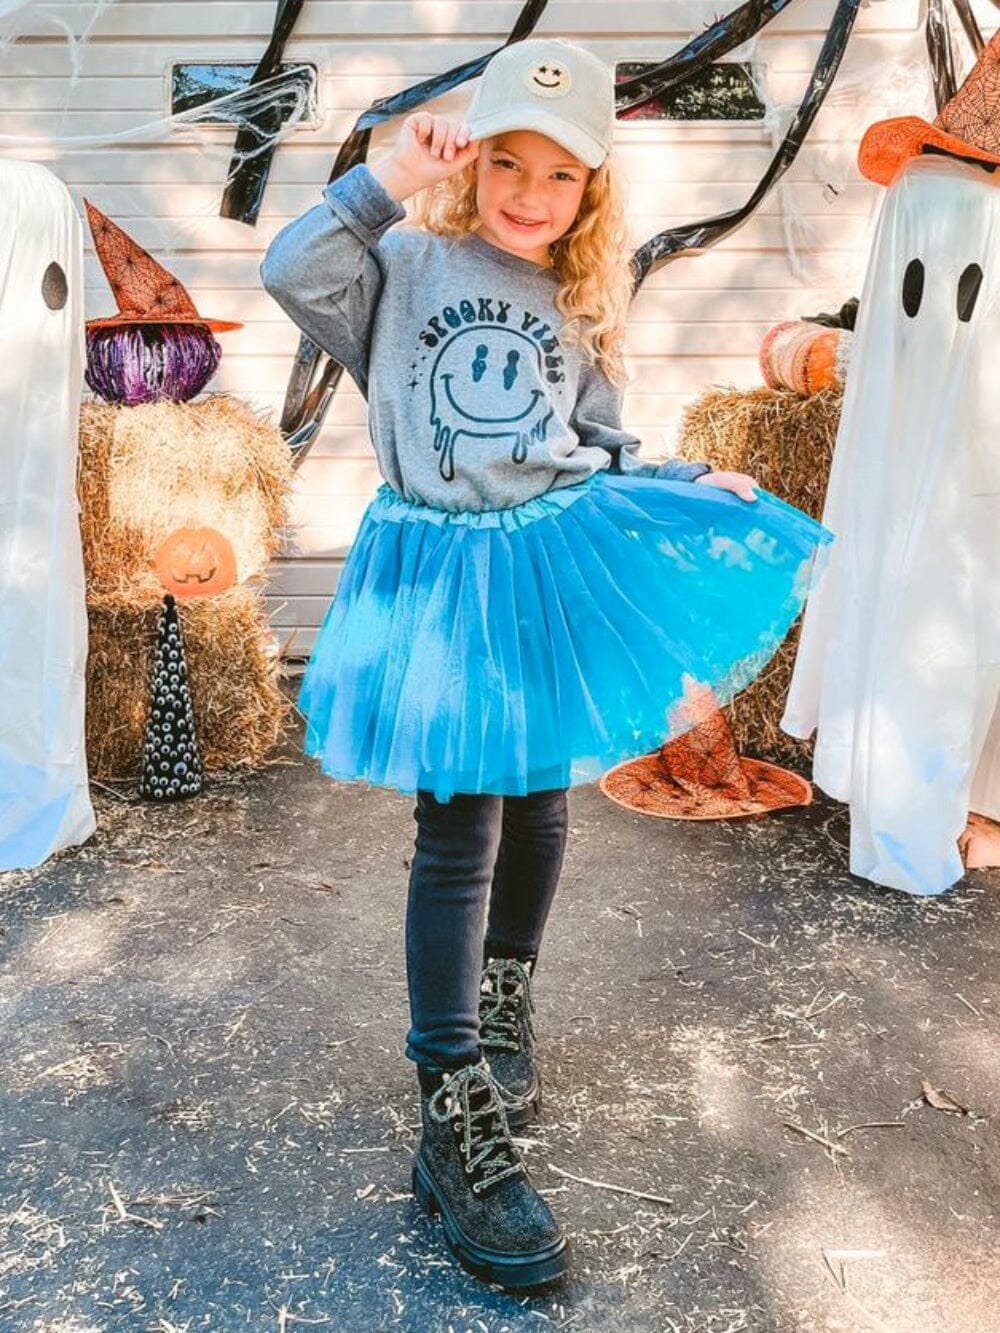 Teal Tutu Skirt - Kids Size 3-Layer Tulle Basic Ballet Dance Costume Tutus for Girls - Sydney So Sweet